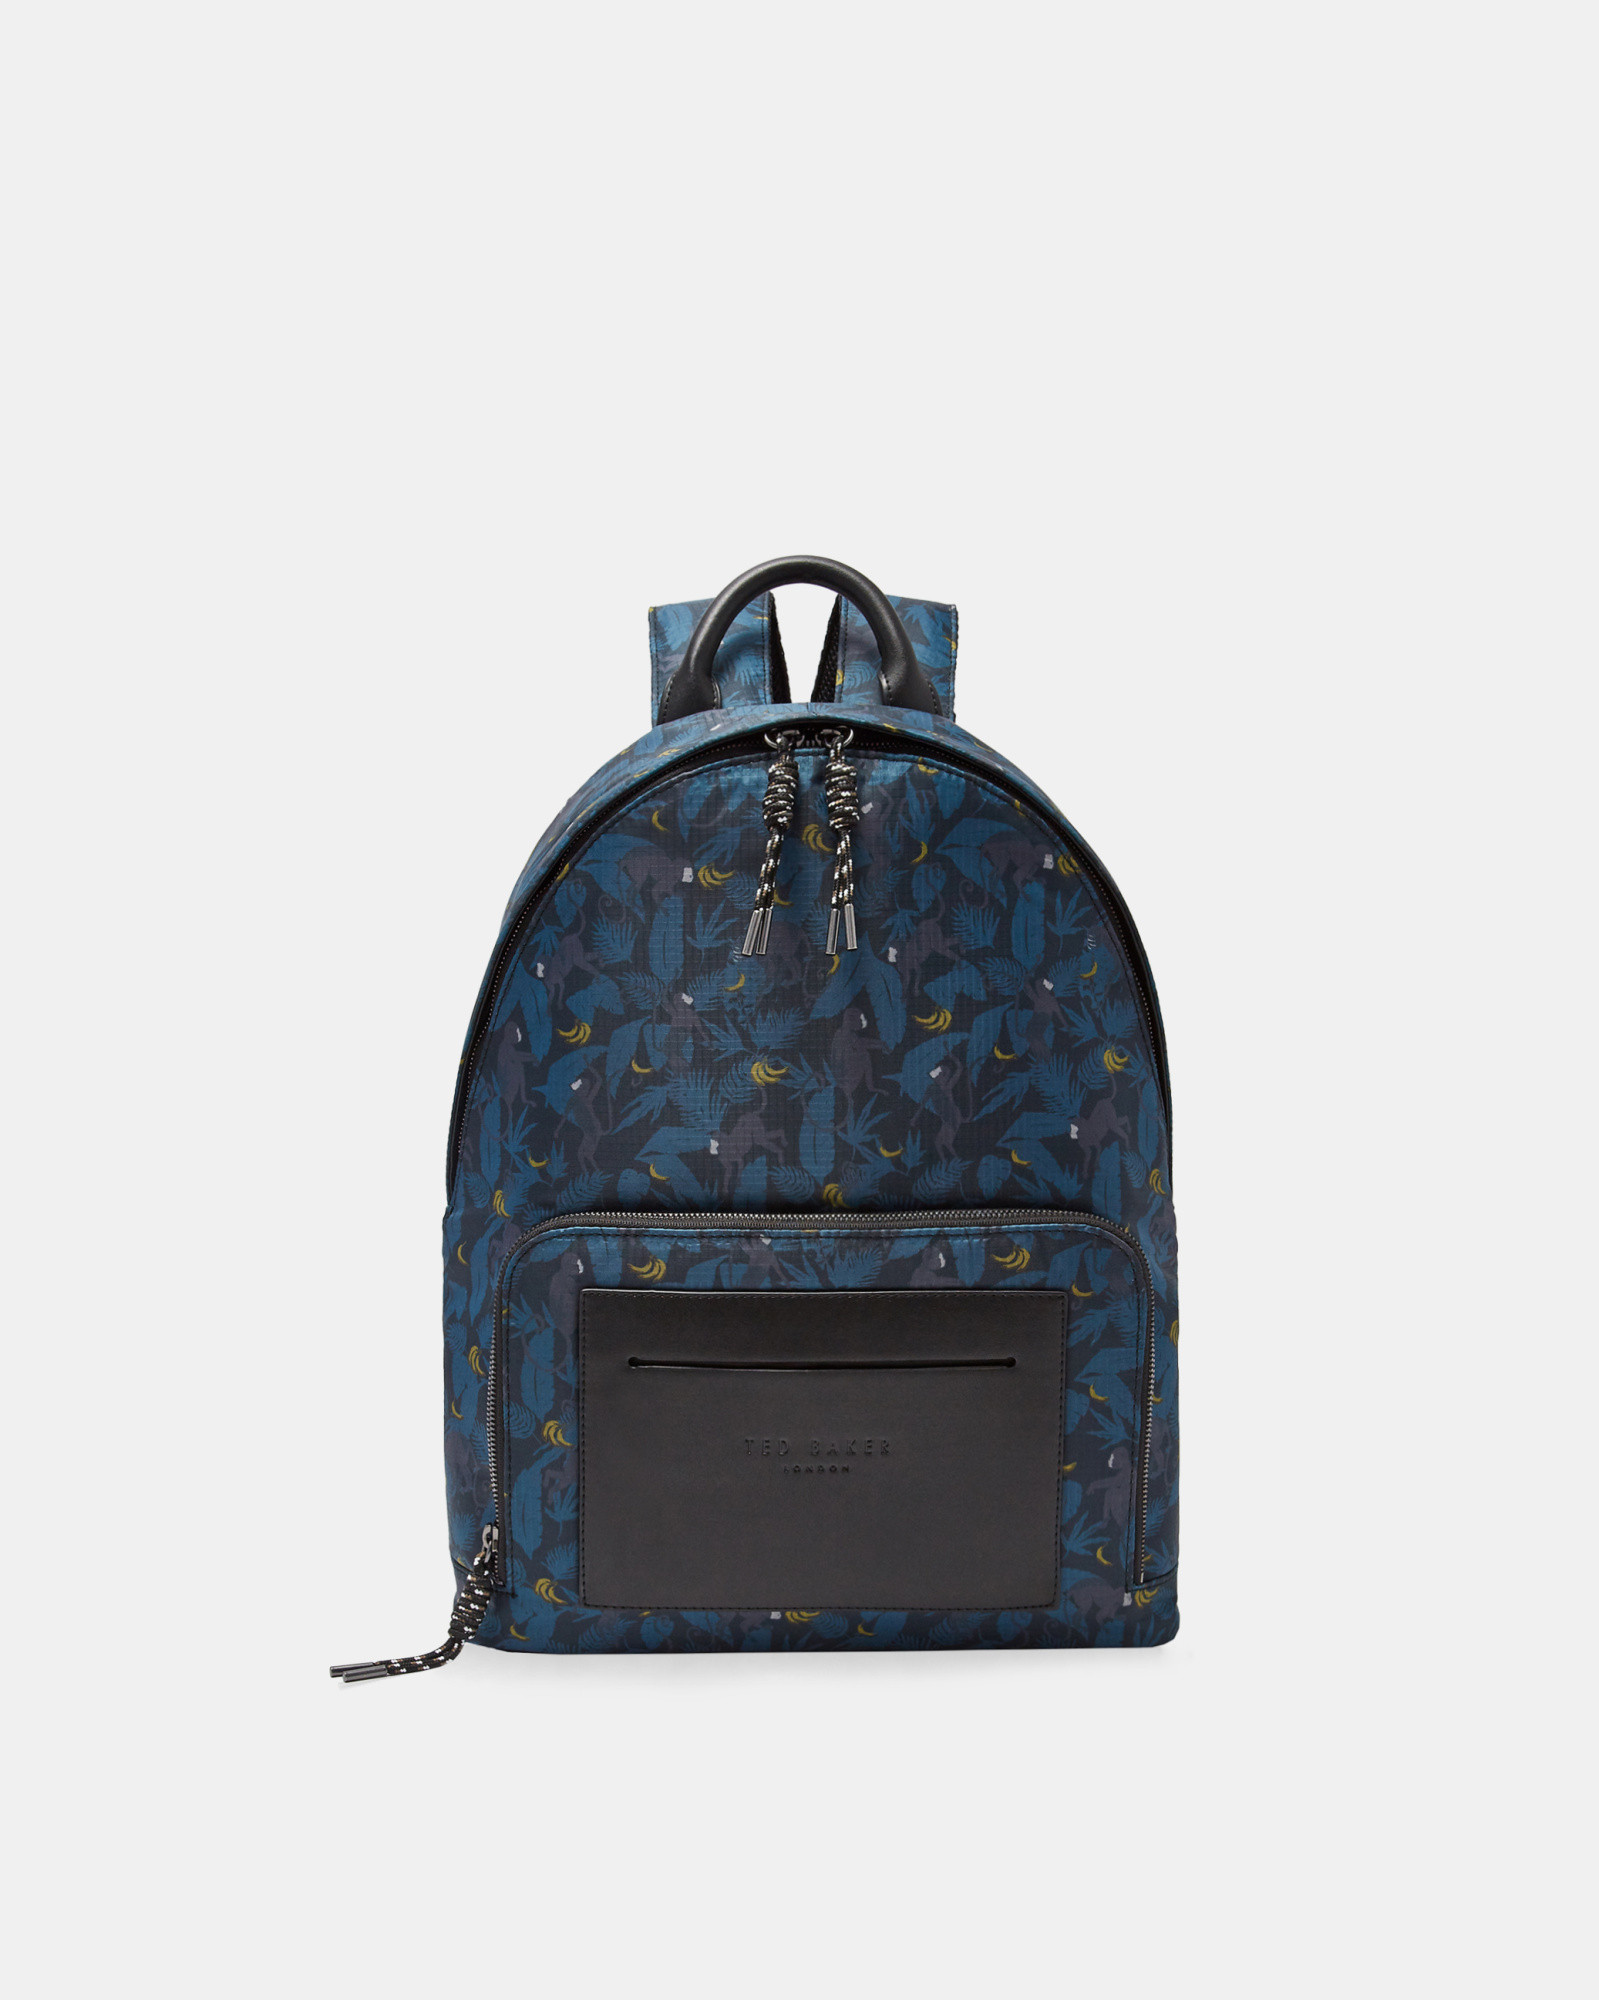 PRIMATE Printed backpack